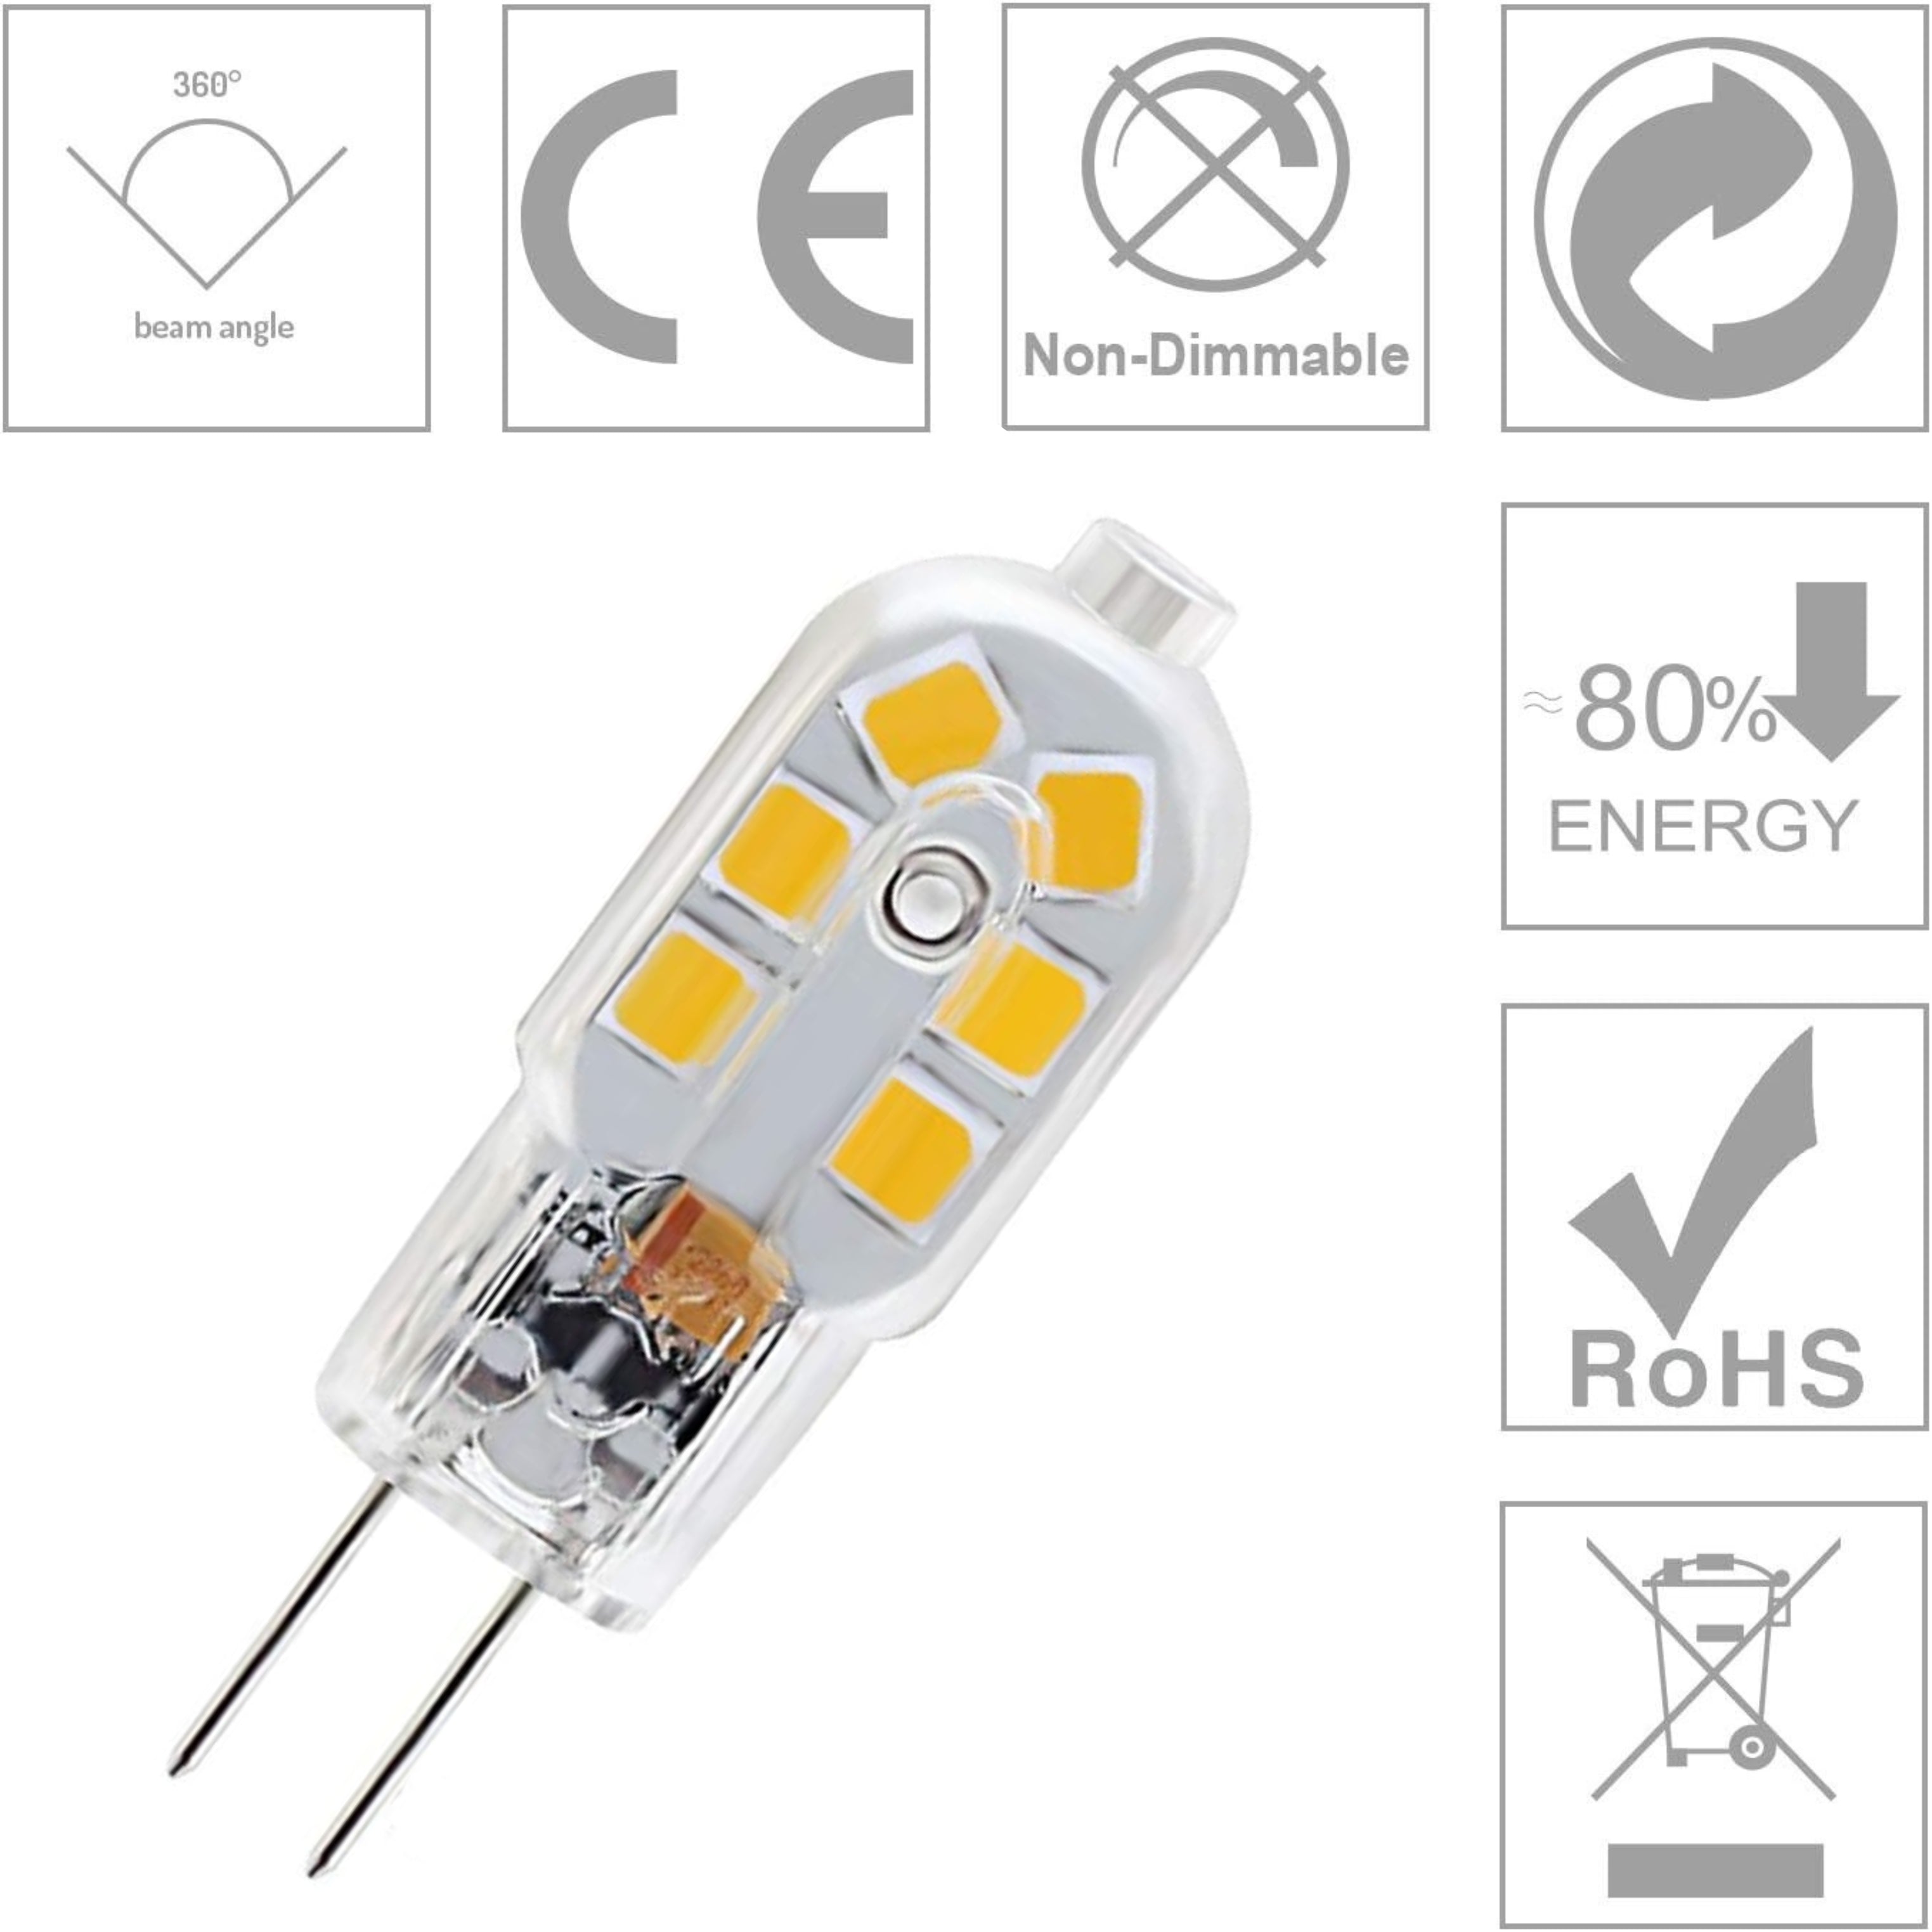 Lumina Lighting® G4 2W LED Bulb | 2W Bi-Pin Landscape LED Light | 12V 3000K Warm White, 190 Lumens | (6-Pack)